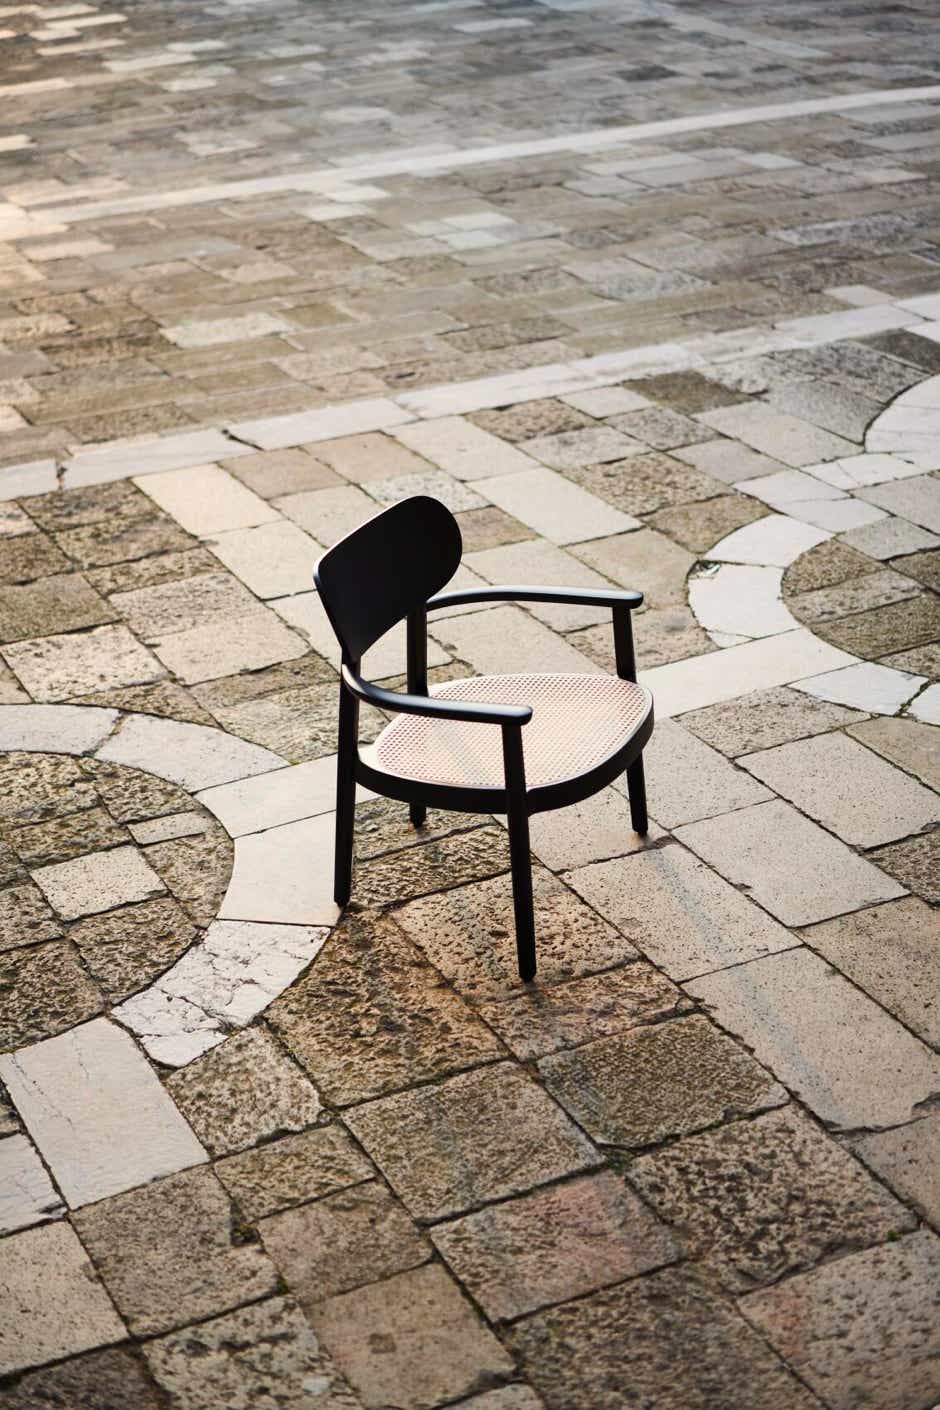 119 Lounge chair Sebastian Herkner, 2021